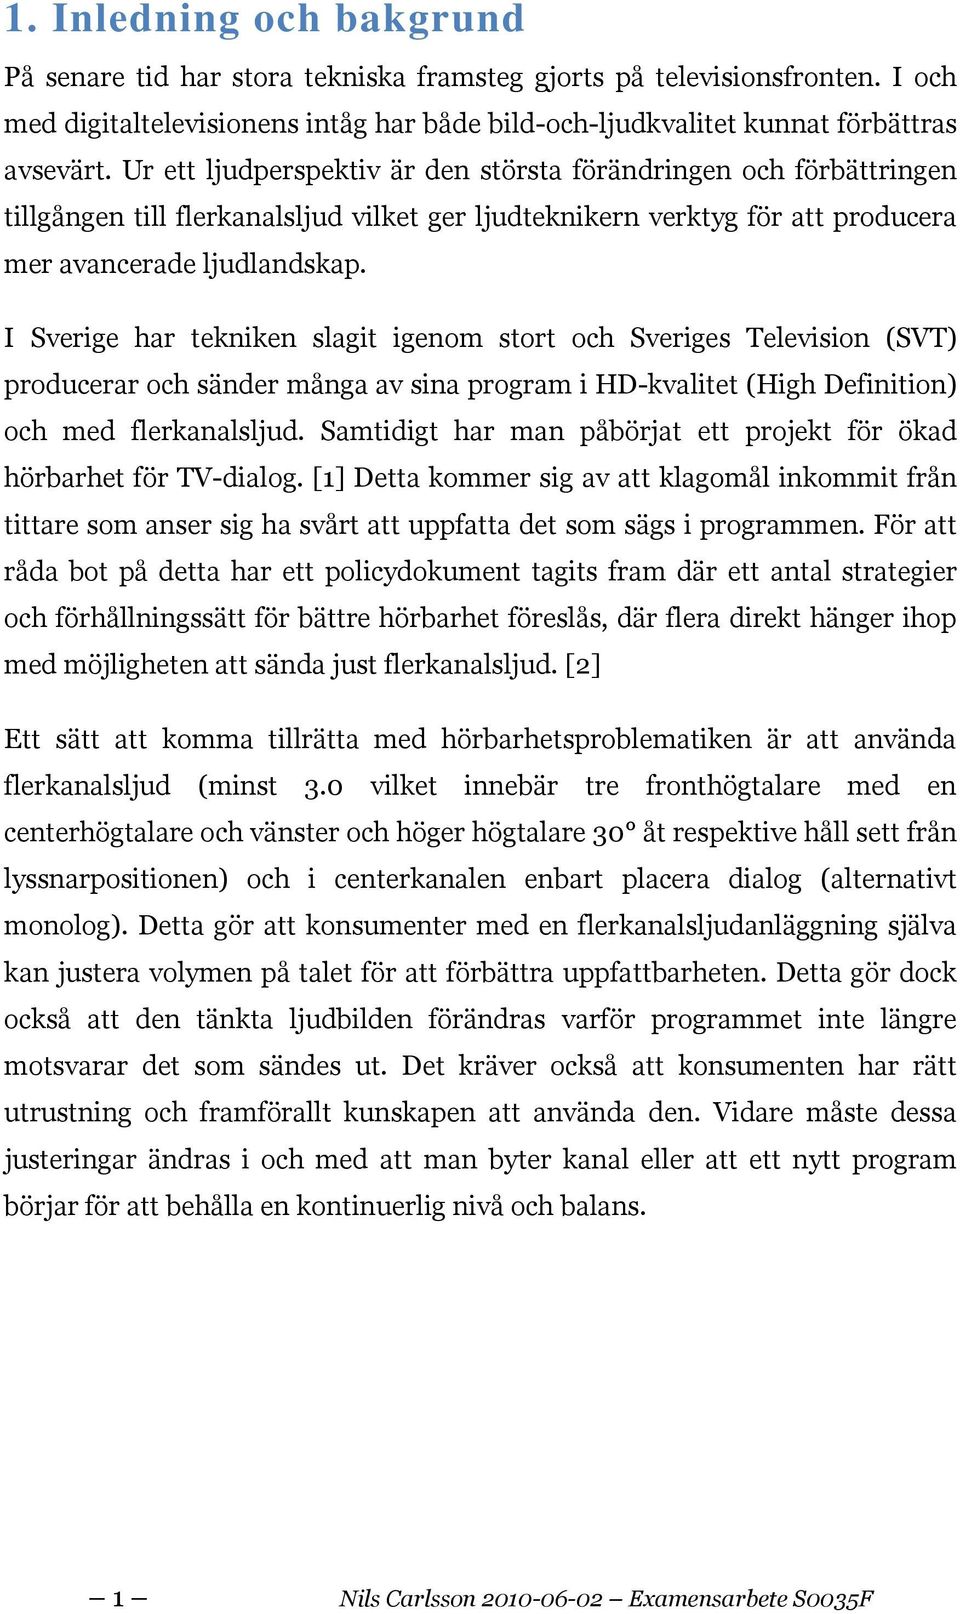 I Sverige har tekniken slagit igenom stort och Sveriges Television (SVT) producerar och sänder många av sina program i HD-kvalitet (High Definition) och med flerkanalsljud.